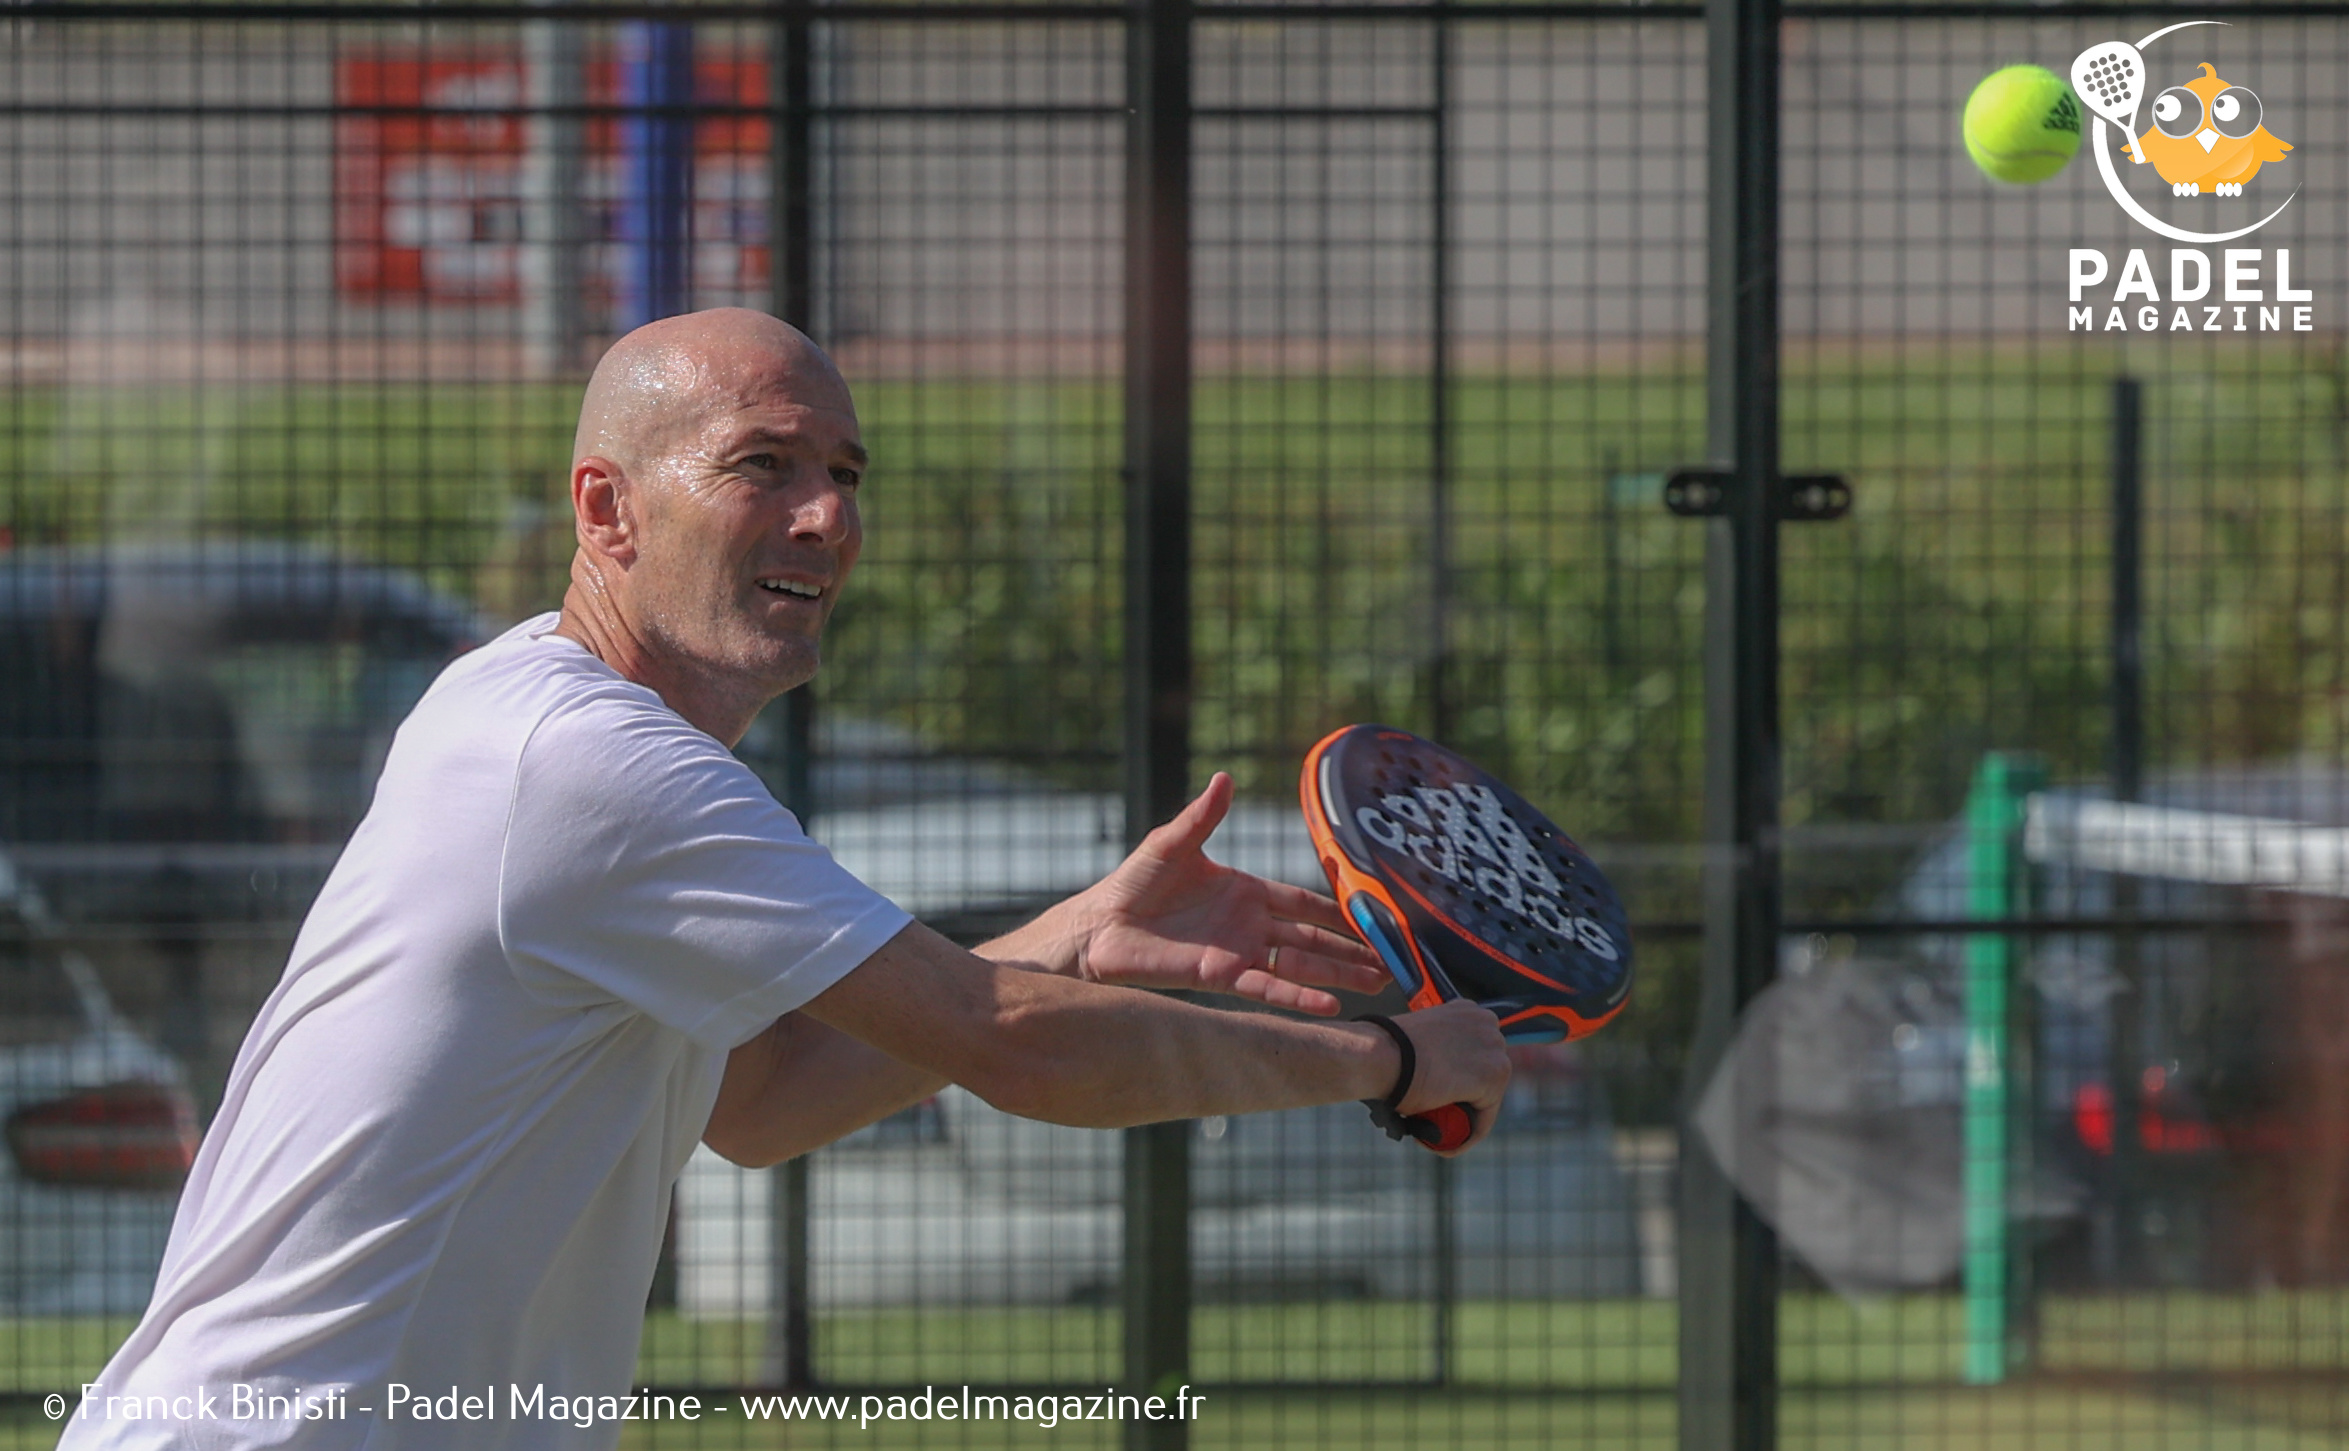 Zinedine Zidane: padel och fotboll hemma!